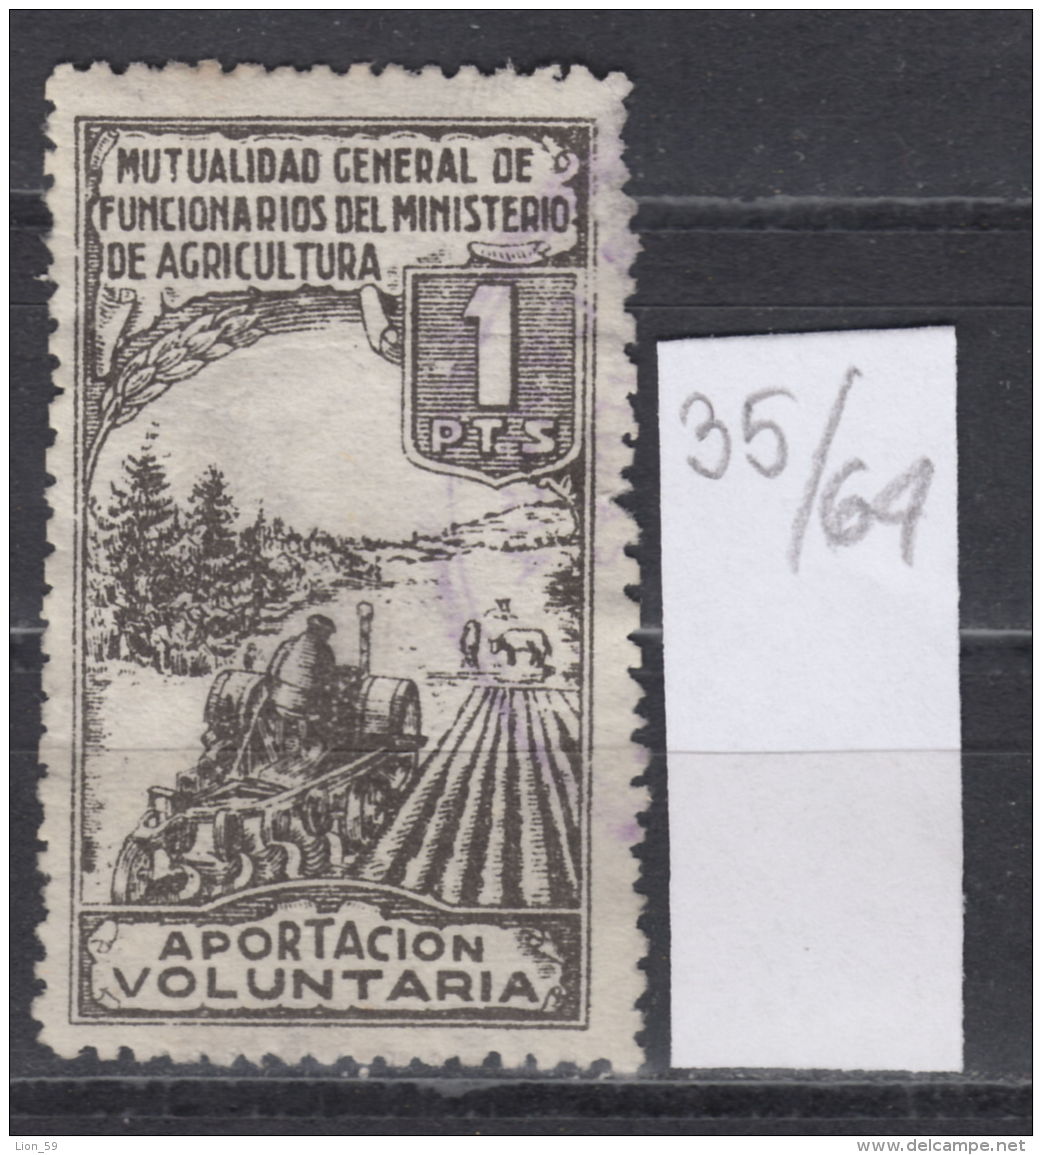 35K64 / 1 Pts. Aportacion Voluntaria - MUTUALIDAD GENERAL DE FUNCIONARIOS DEL MINISTERIO DE AGRICULTURA SPAIN Revenue - Postage-Revenue Stamps